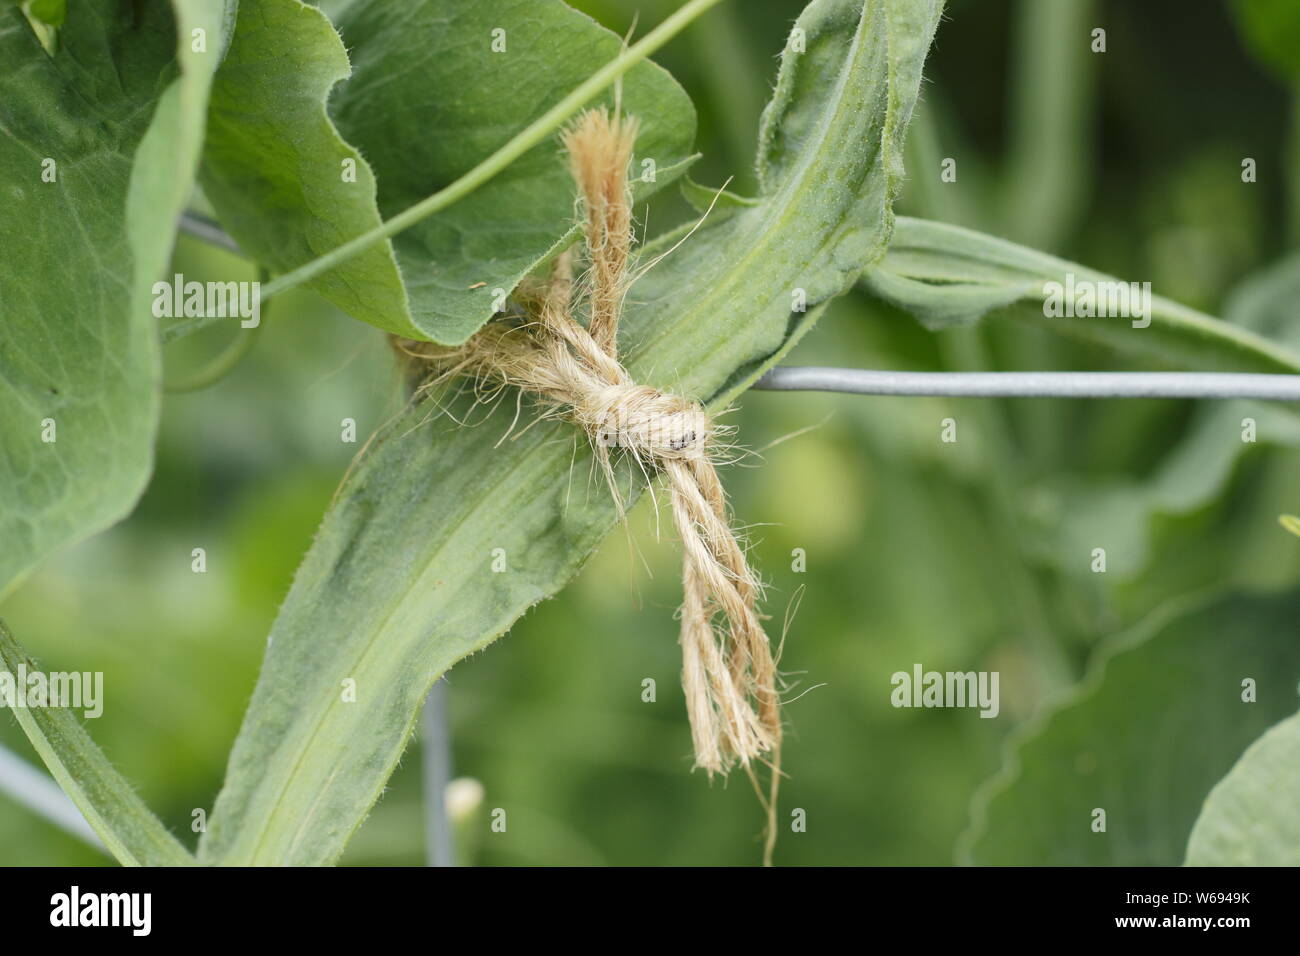 Lathyrus odoratus. La legatura di pisello dolce pianta per promuovere una forte, direttamente la crescita e fornire supporto. Foto Stock